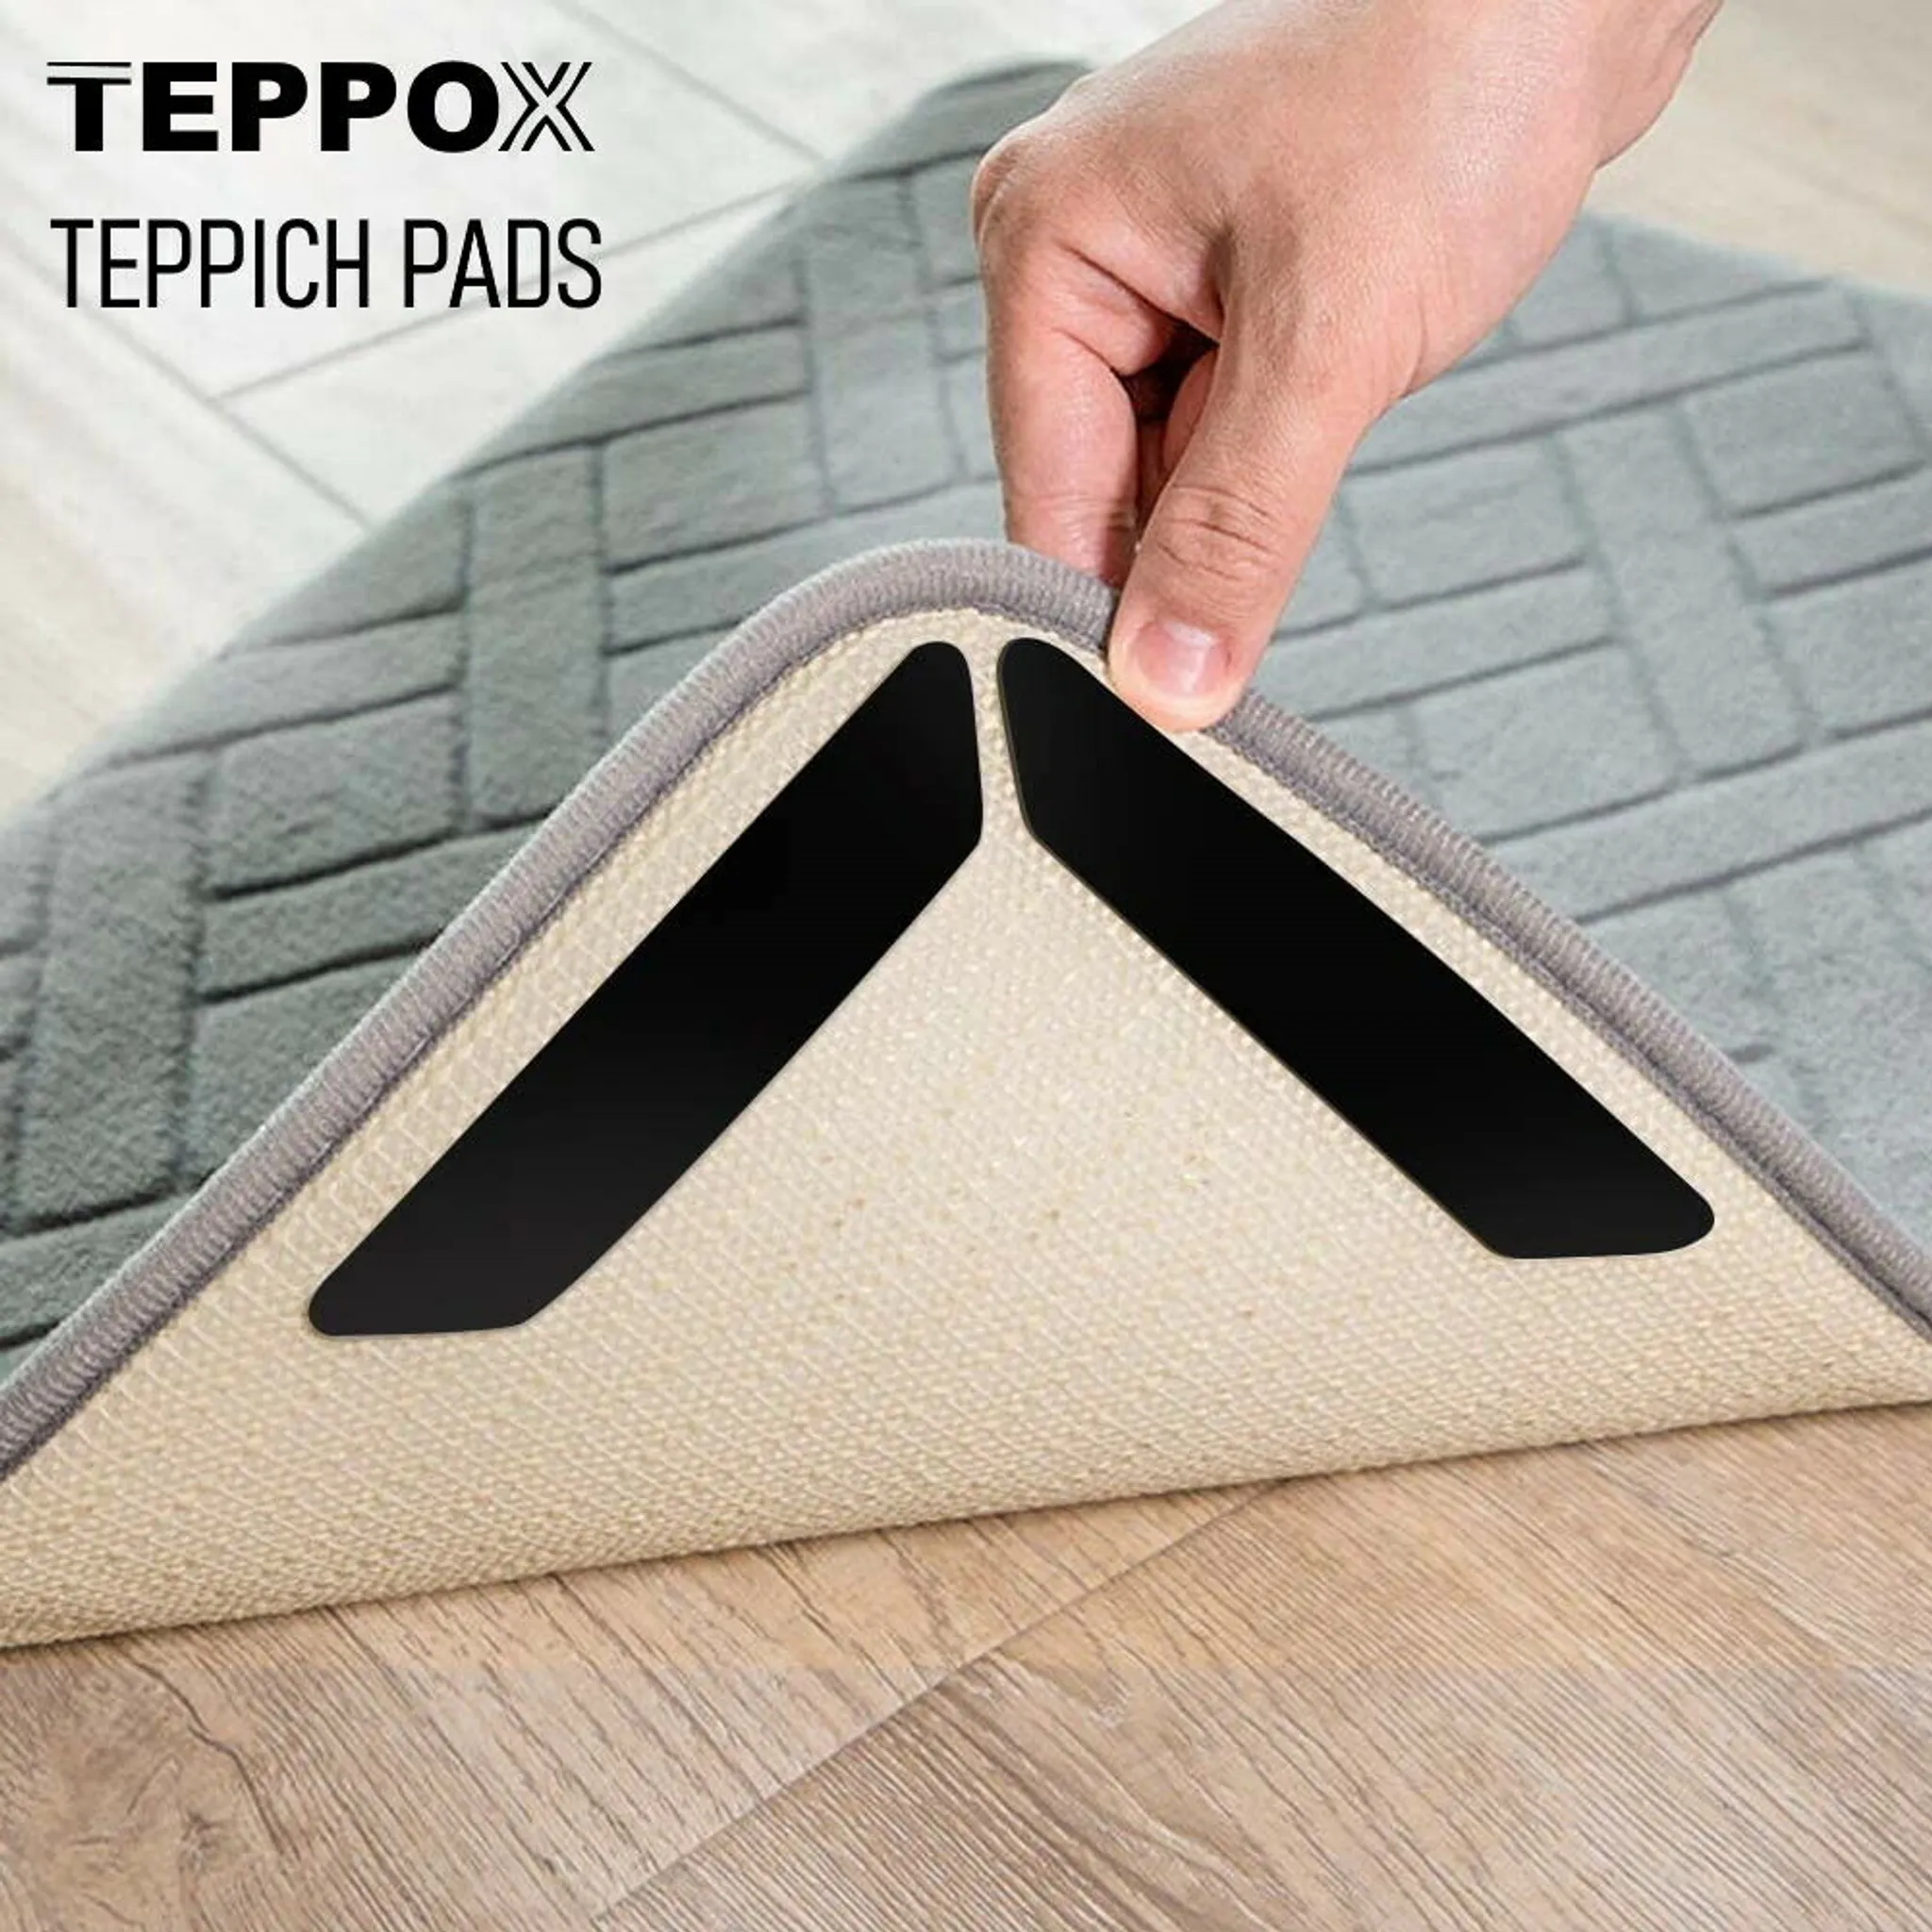 TEPPOX Teppichstopper Anti-Rutsch Aufkleber Stopper Pads